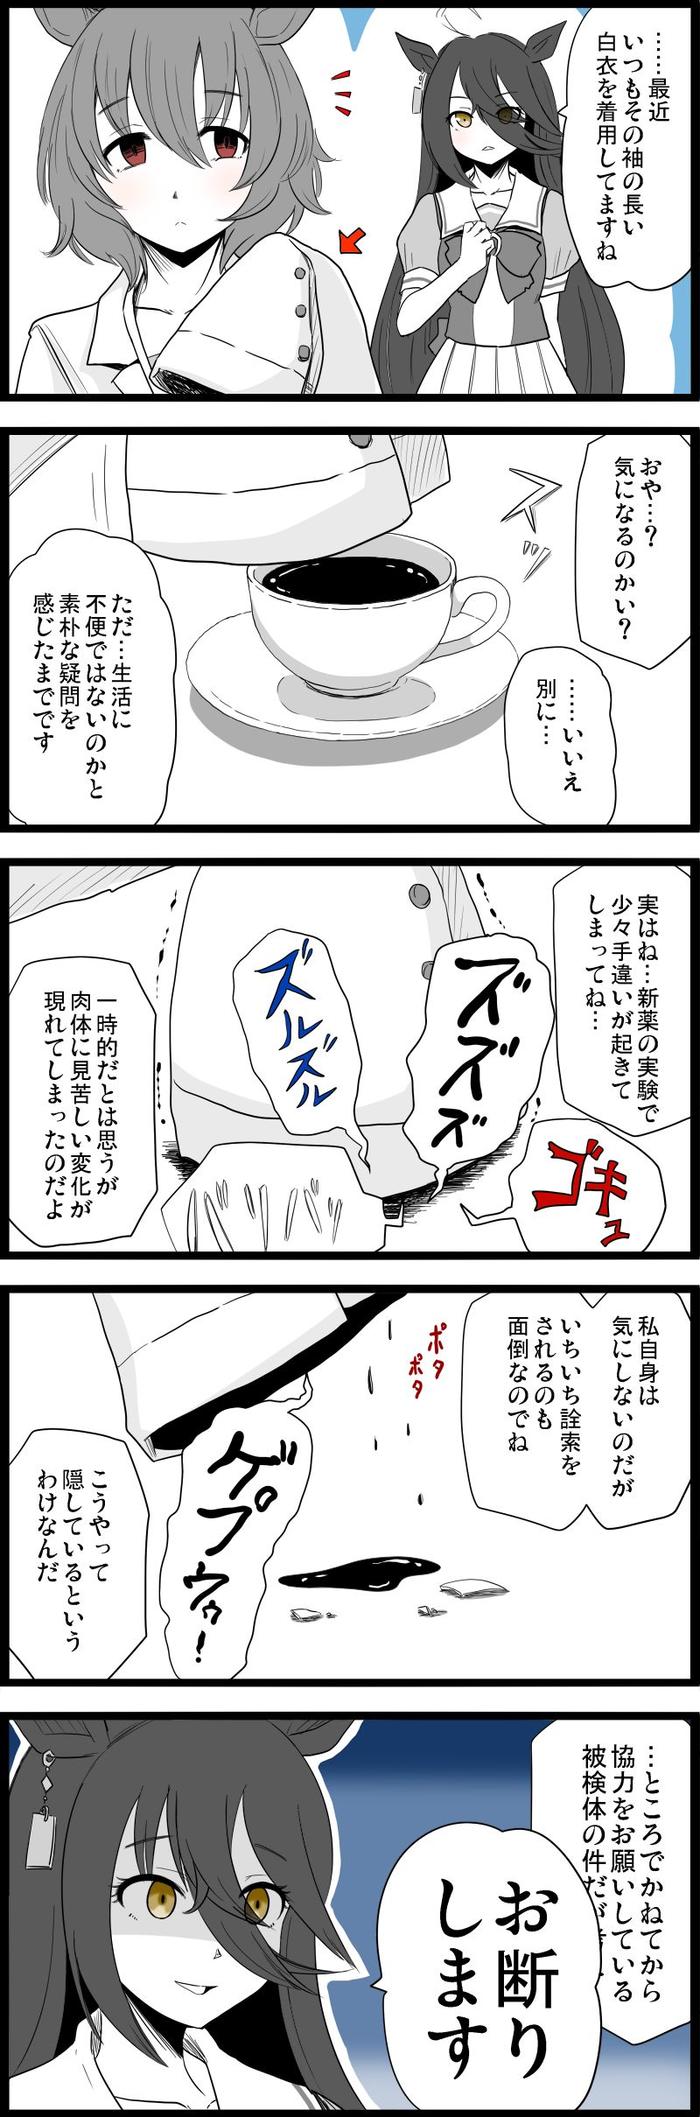 马娘“TAKION&咖啡漫画”总结（11本）插画图片壁纸